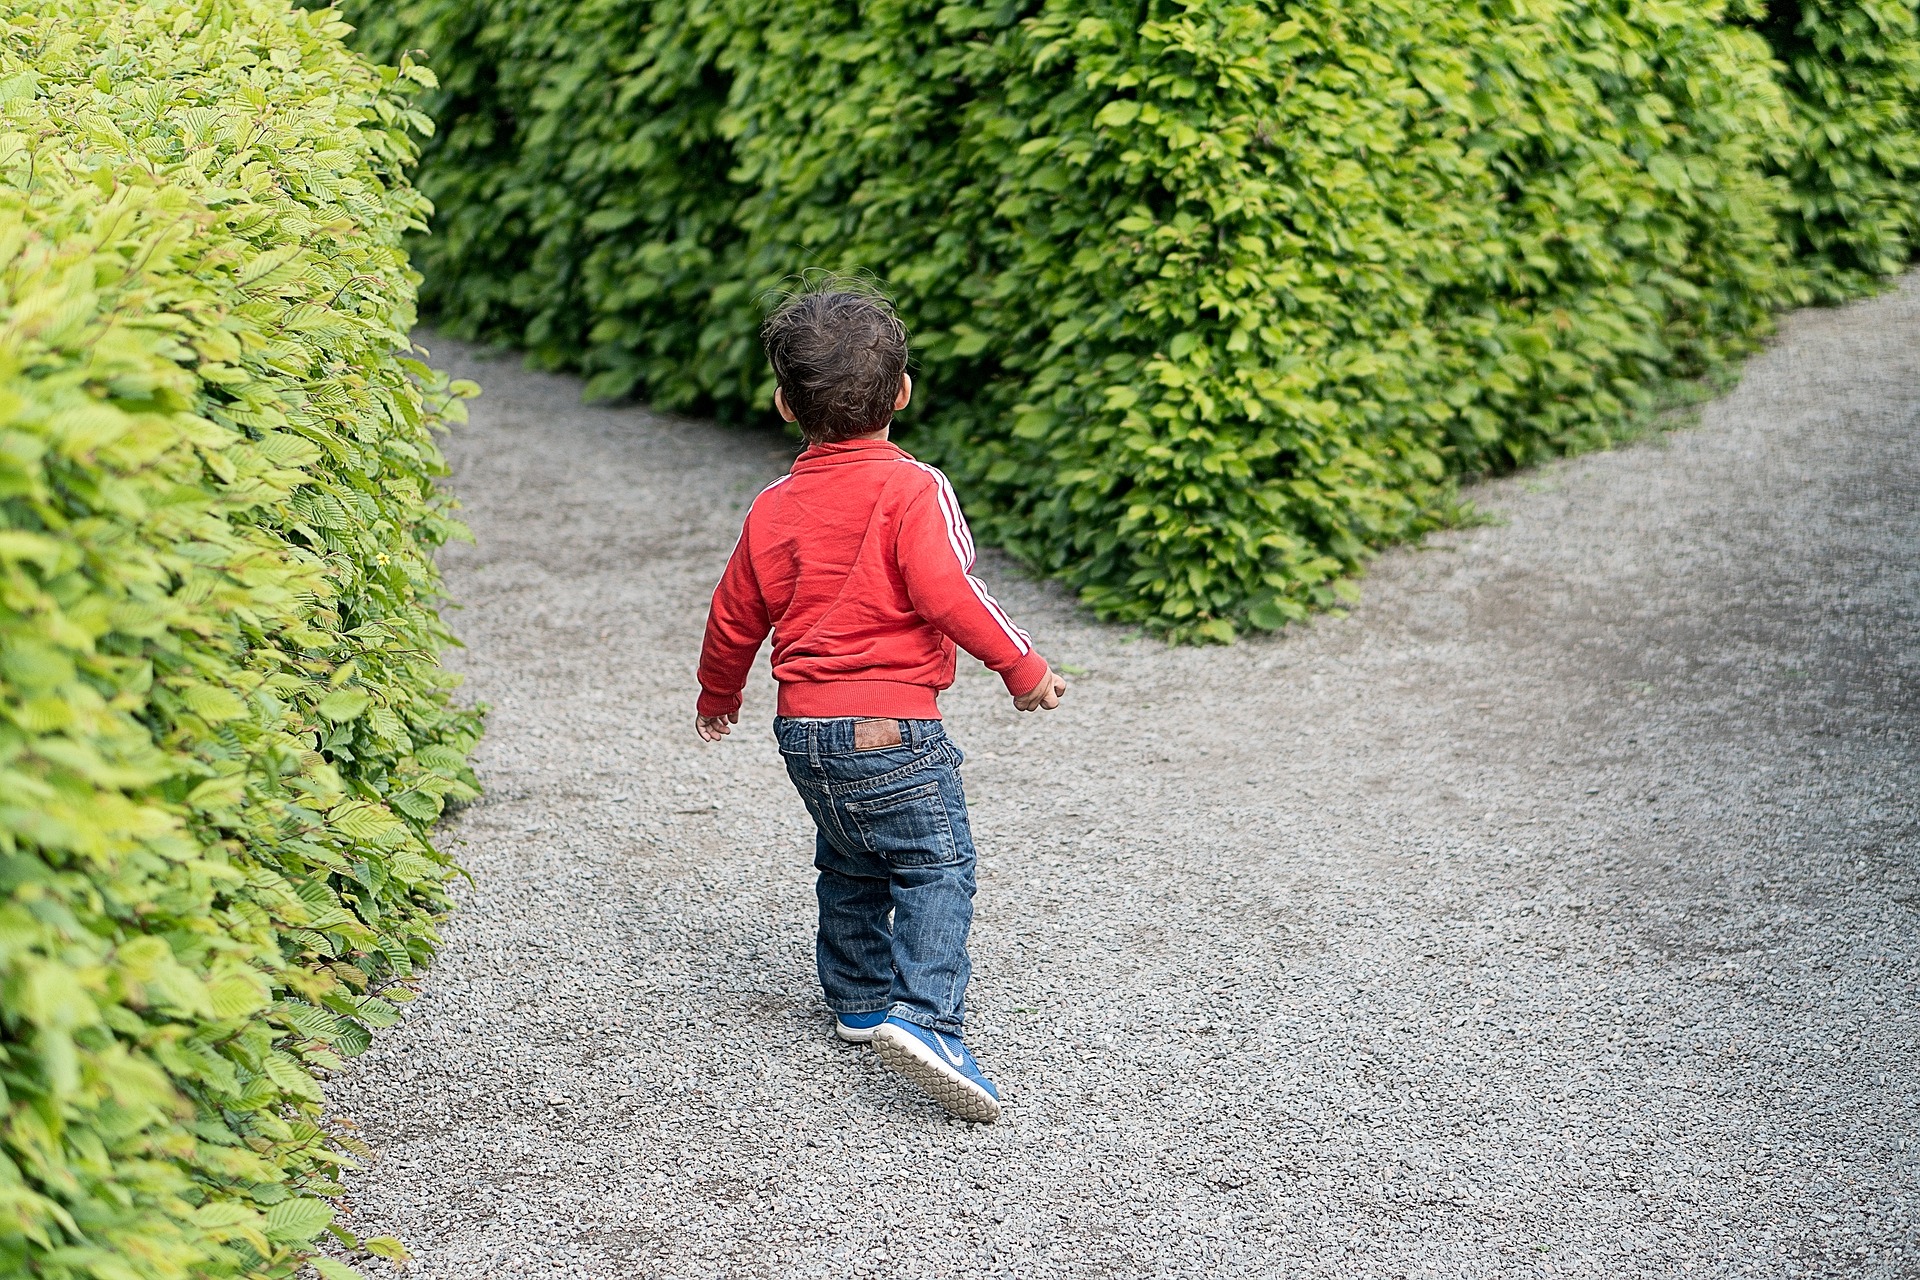 Foto de uma criança pequena, de costas, andando por um caminho cercado por arbustos, tomando o rumo da esquerda num momento de bifurcação.